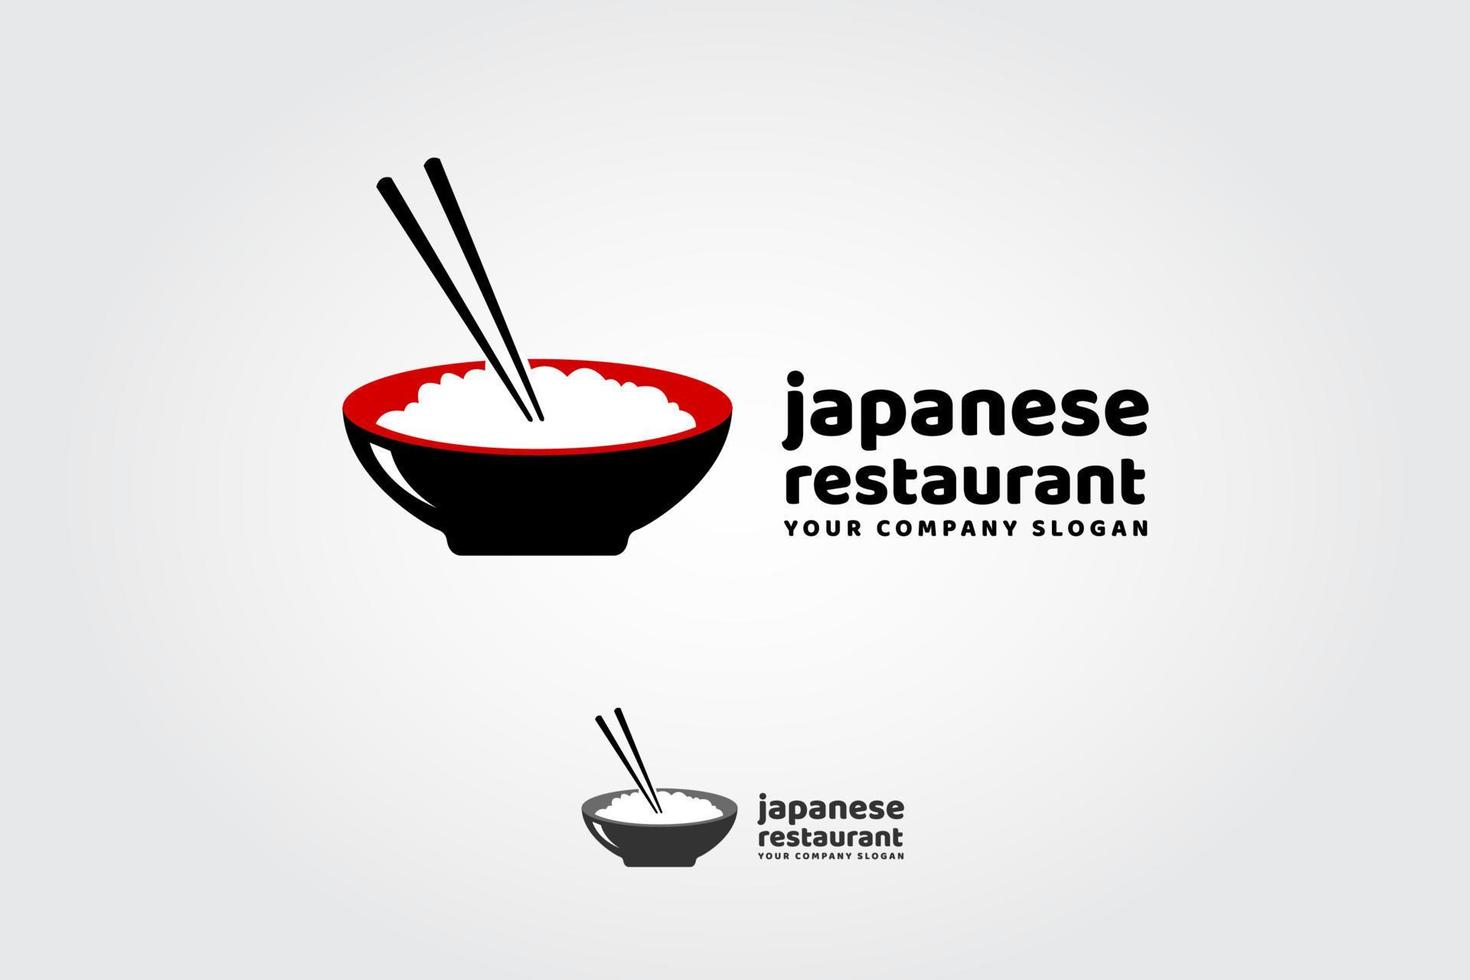 restaurant japonais est un modèle de logo polyvalent, peut être utilisé dans toutes les entreprises liées à la cuisine asiatique, au riz, à la restauration rapide, aux restaurants, etc. vecteur